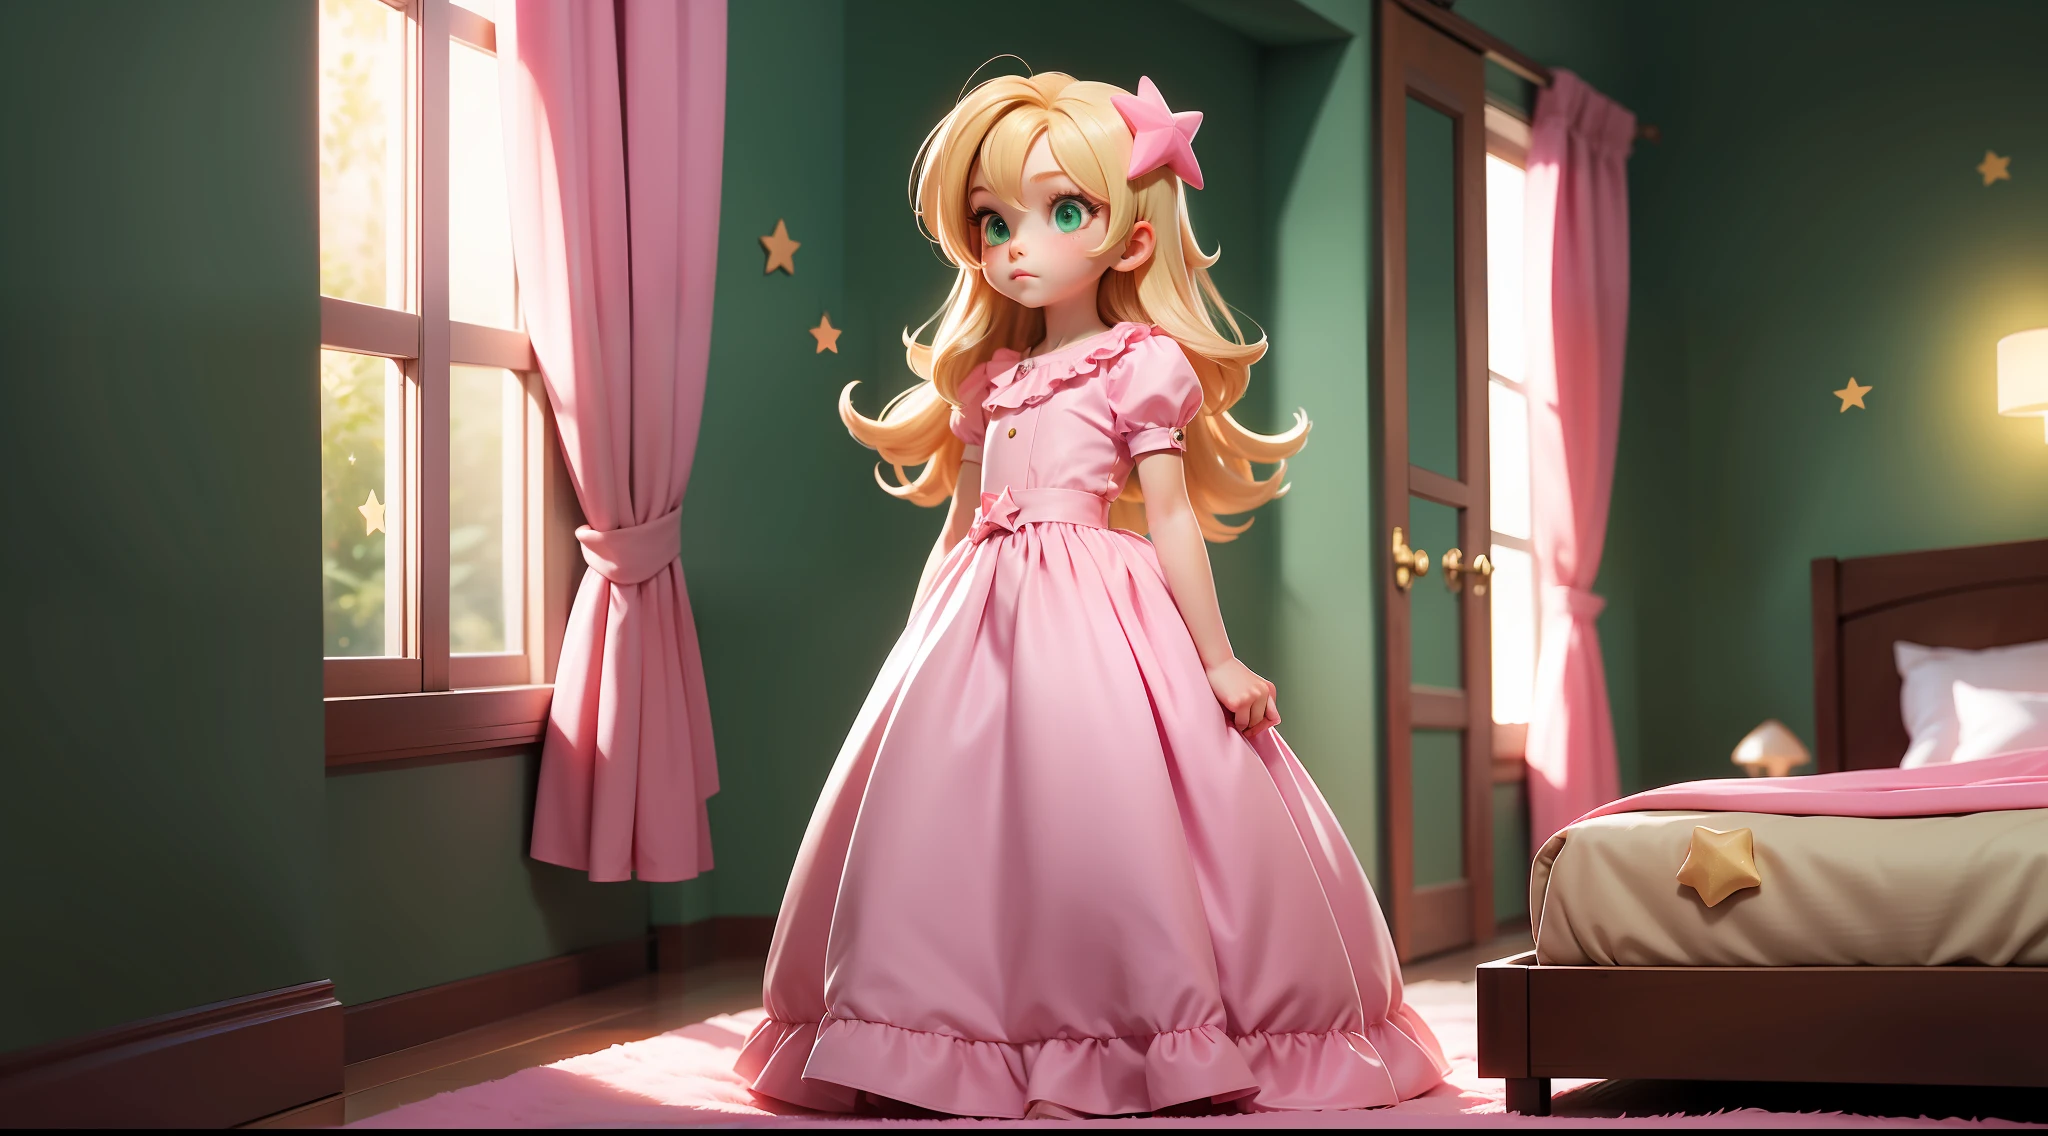 "Ein kleines 6-jähriges Mädchen, blond und grünäugig, Einfaches rosa Kleid, Stehen, Ganzkörper, im Profil für den Betrachter, Blick auf das Bett, In dem Raum, stars floating In dem Raum, Bett im Hintergrund, intensives Leuchten unter dem Bett."